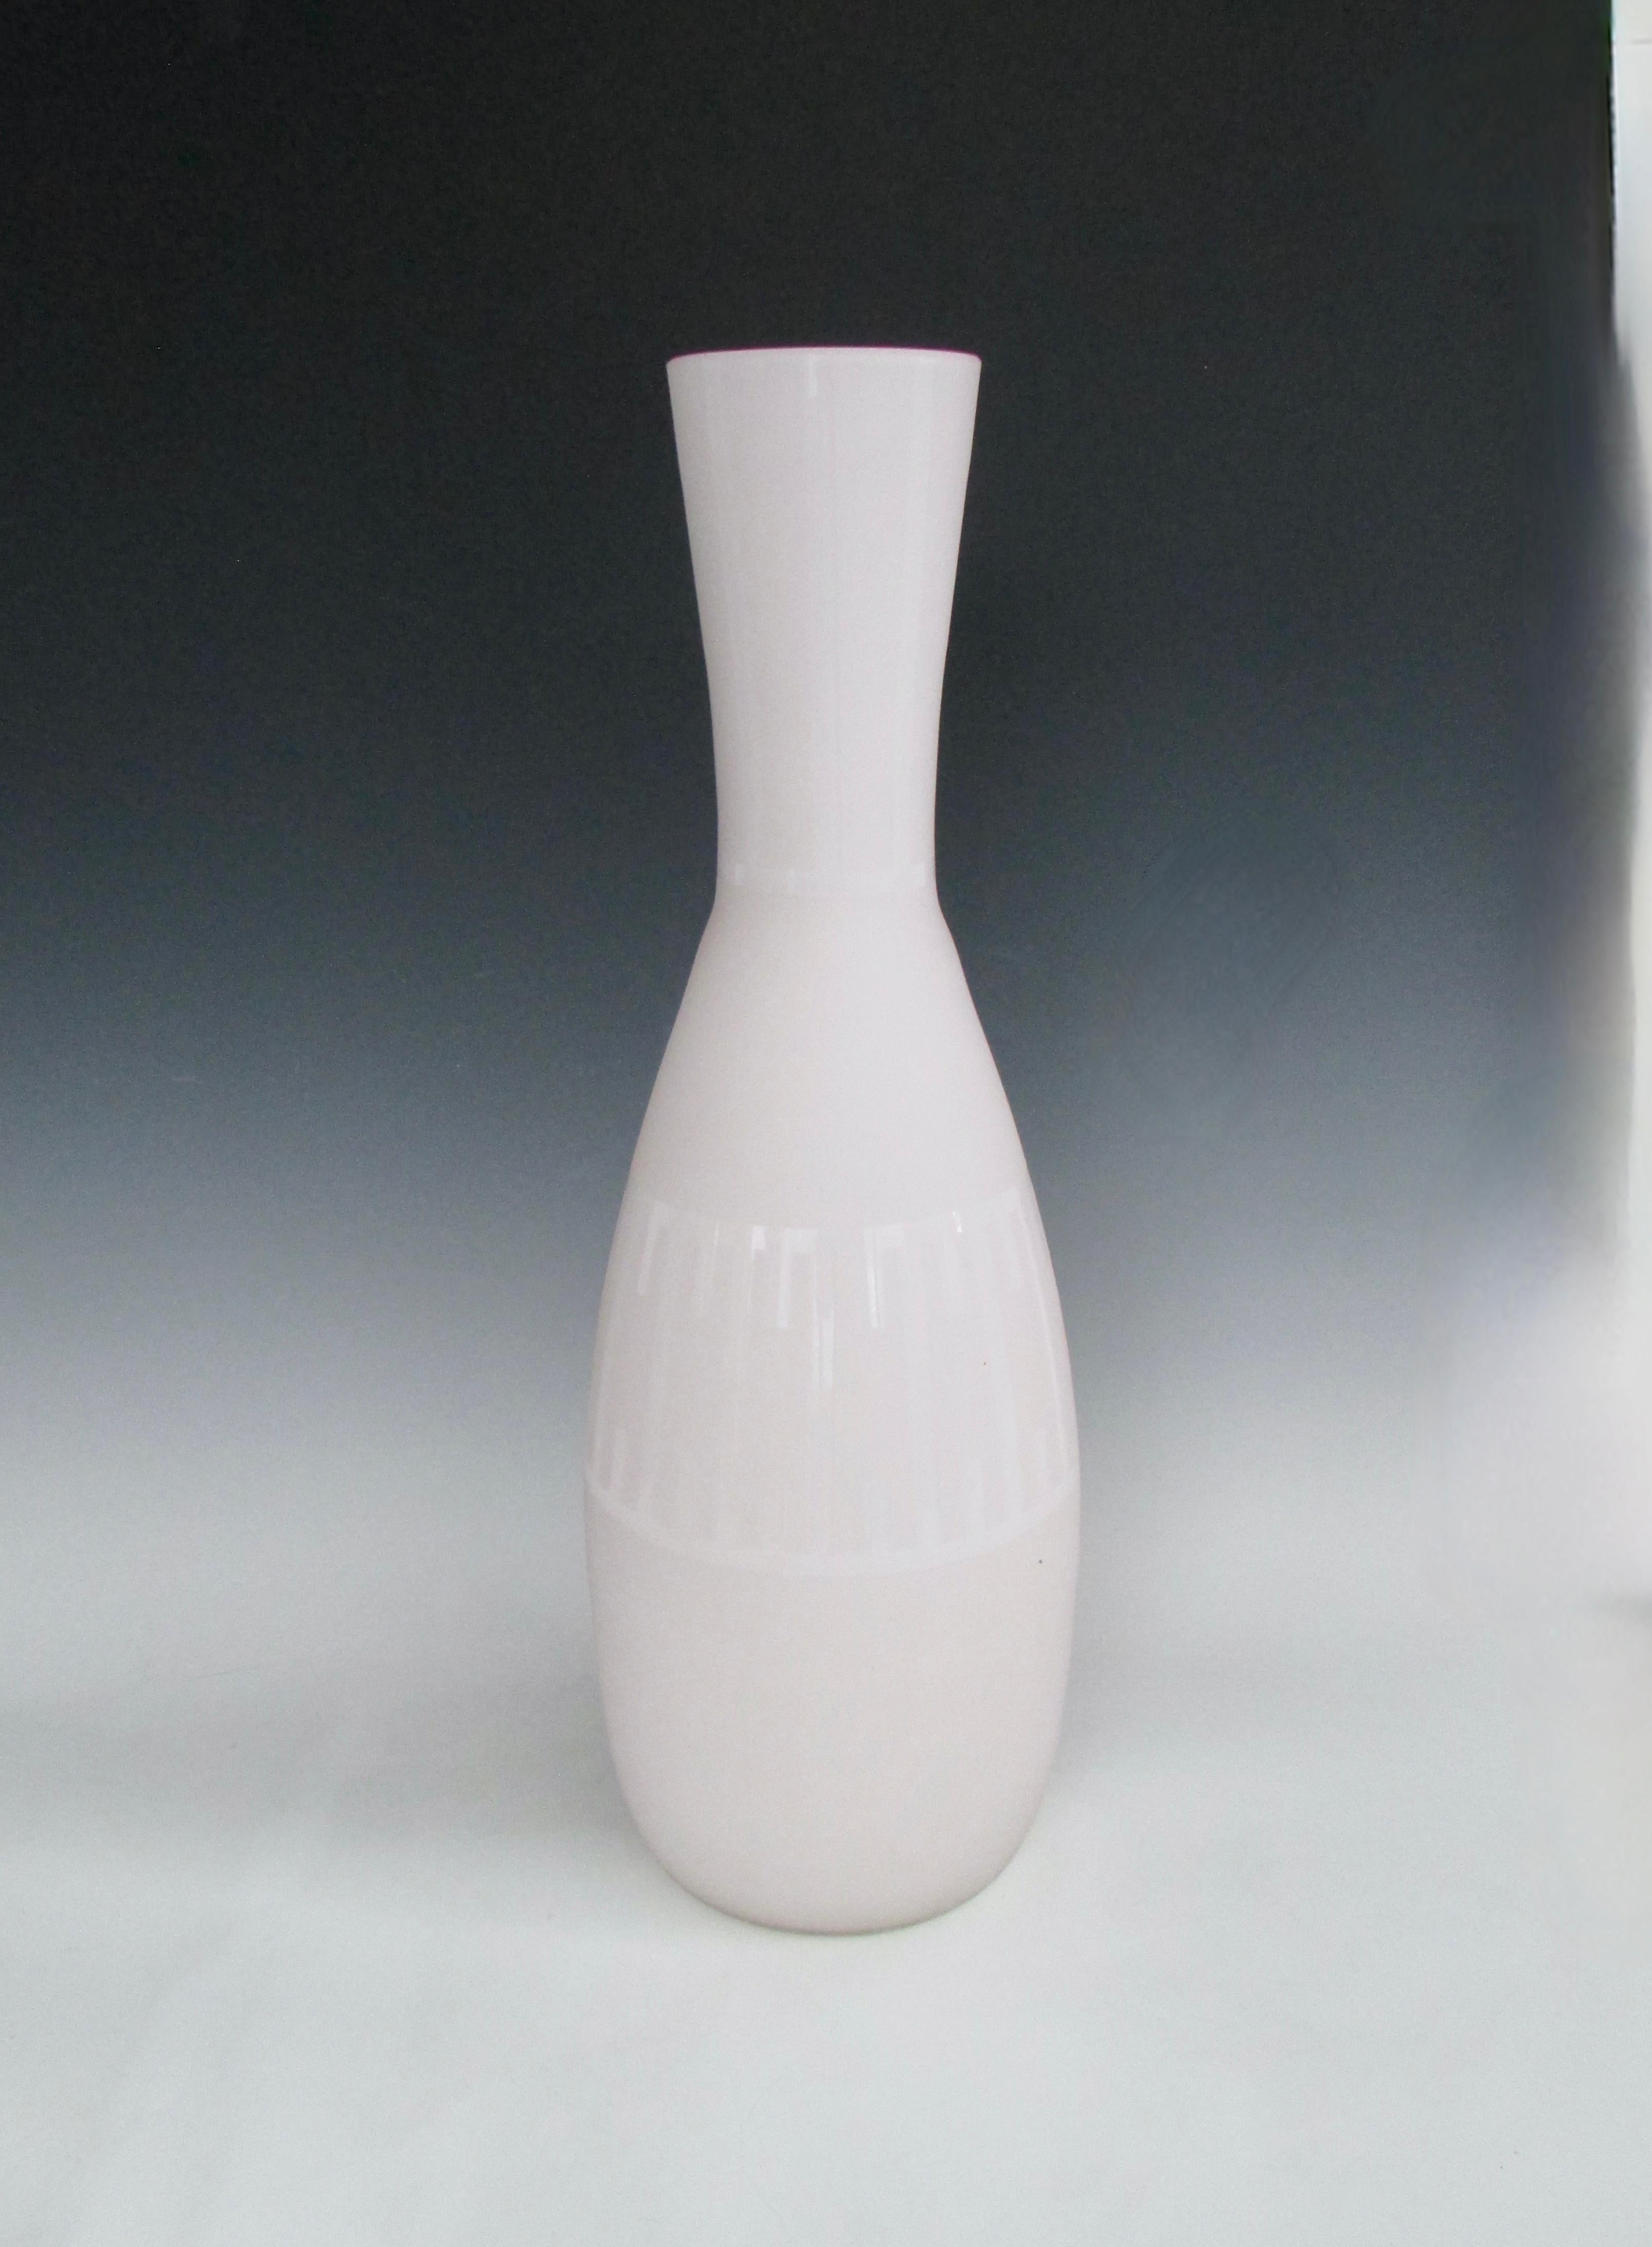 Grand vase de sol en verre coffré en finition mate avec un design brillant.